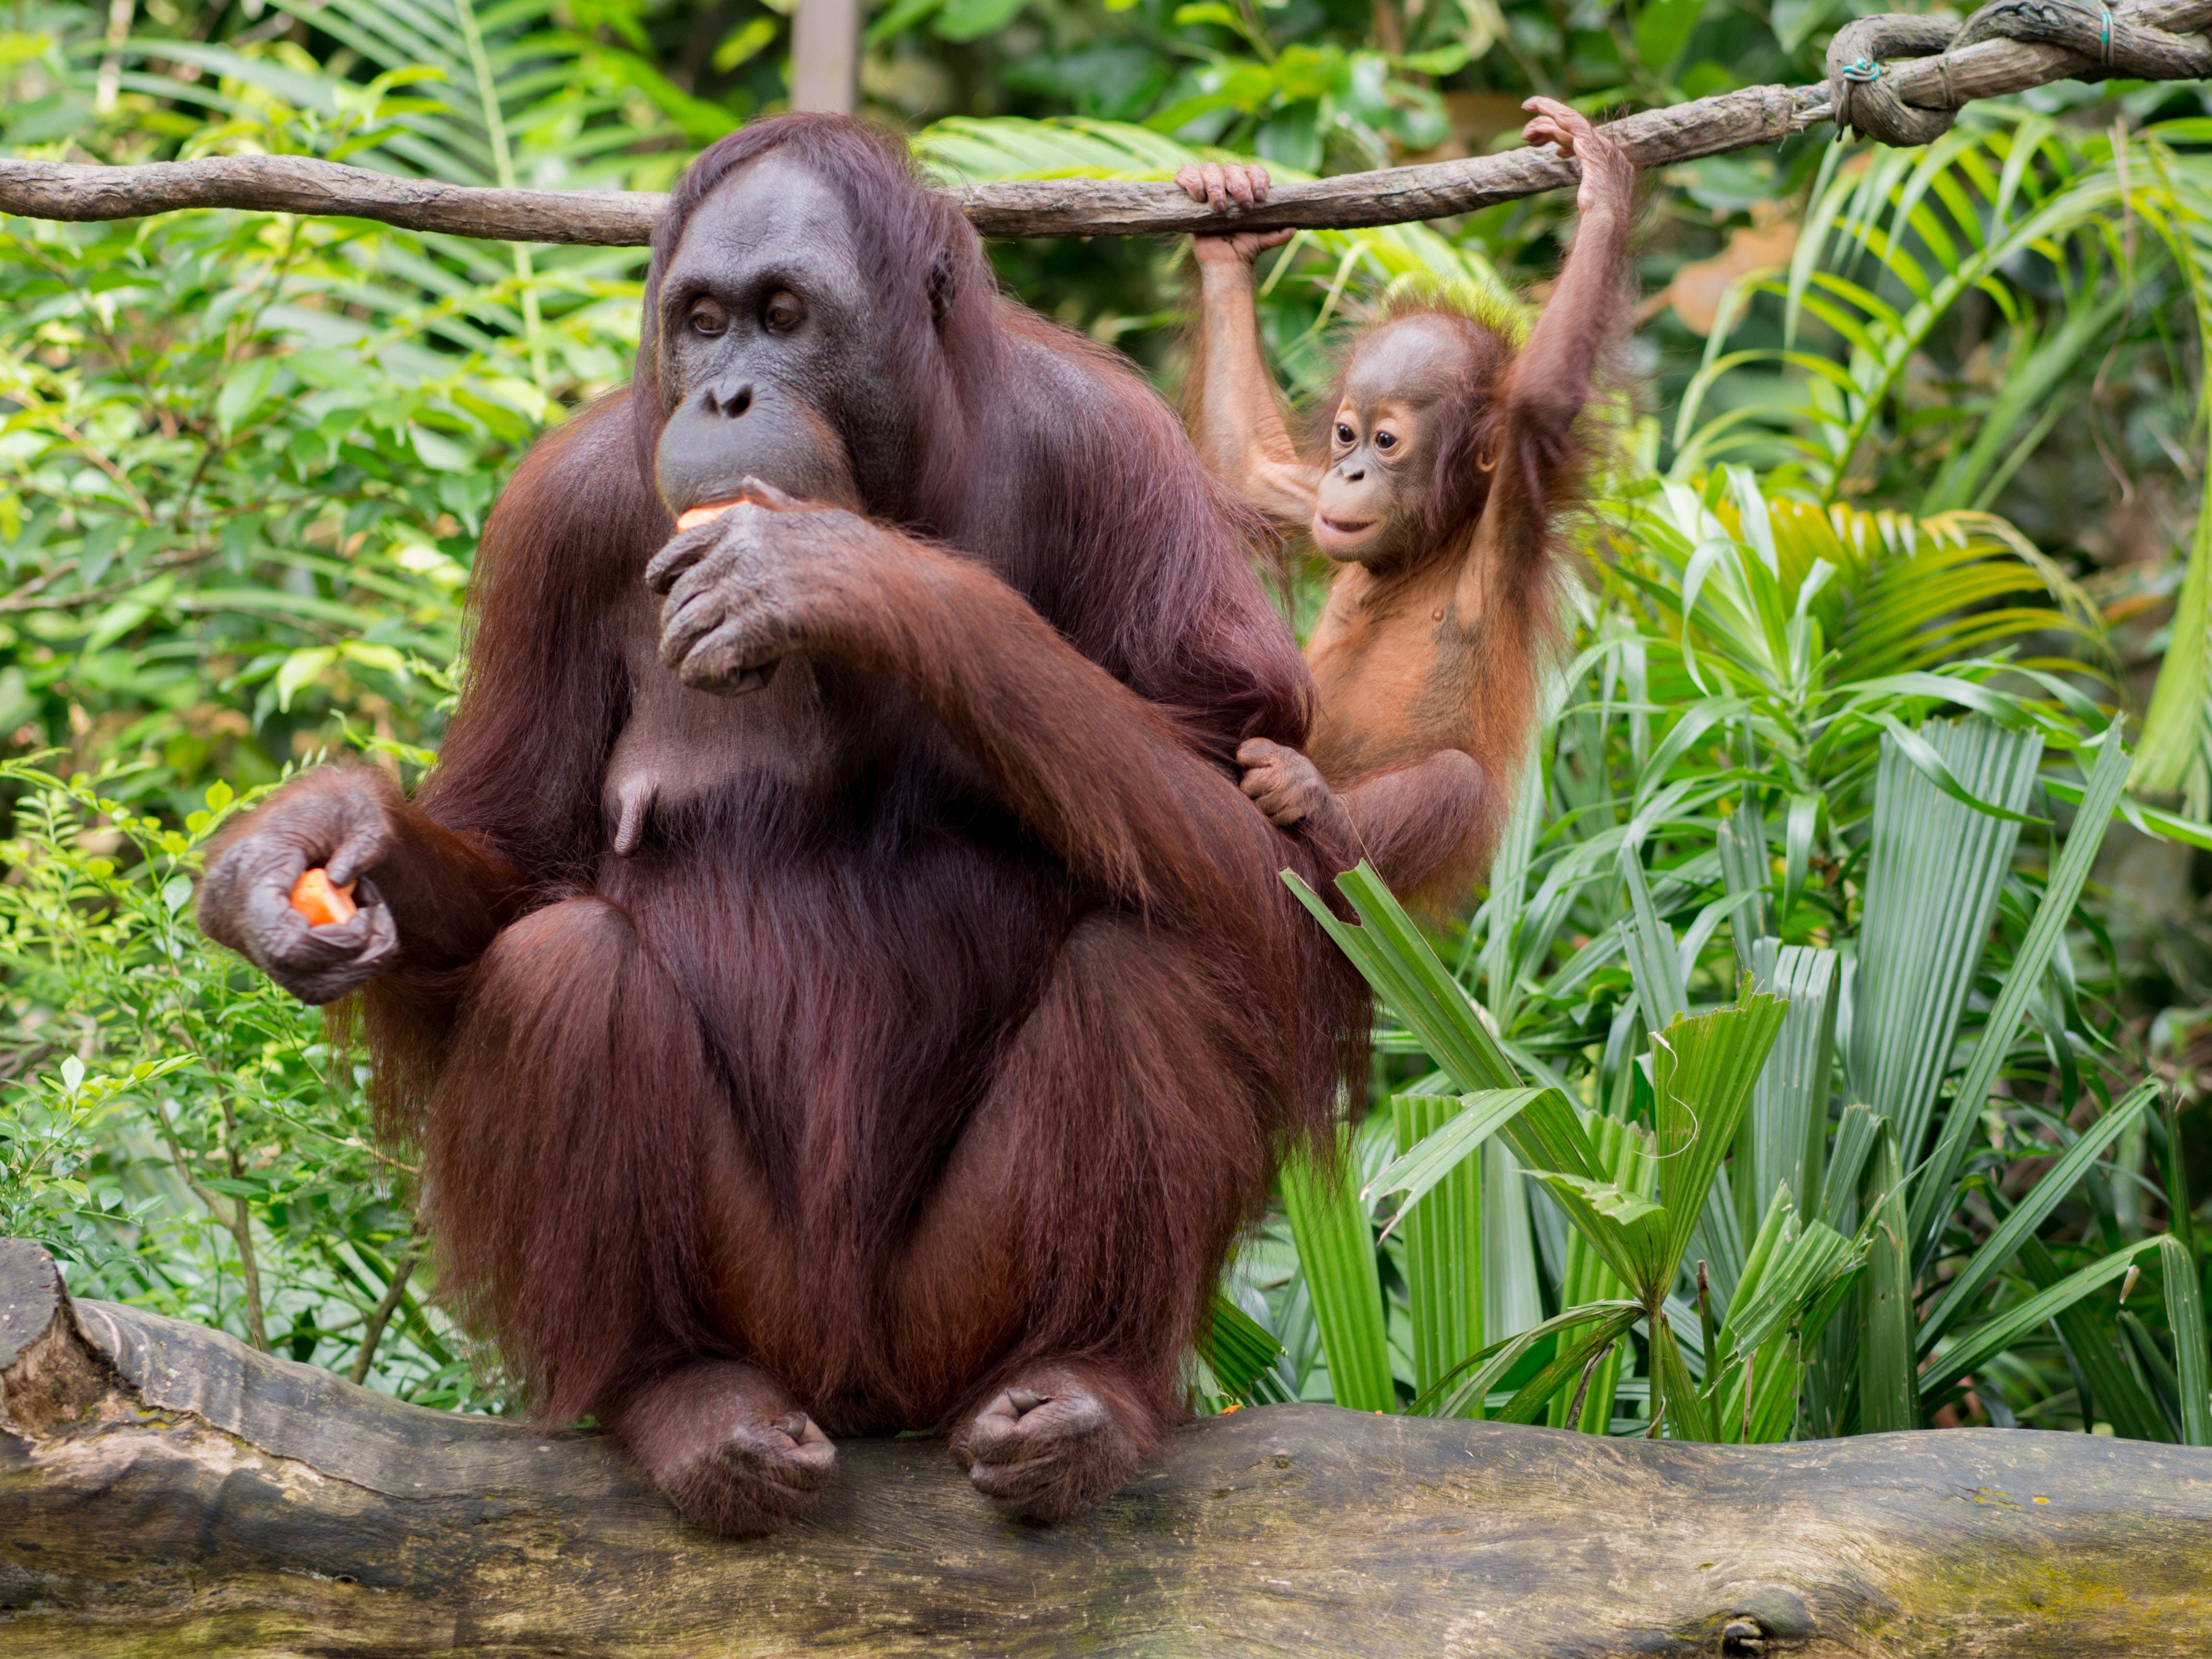 Otorita IKN Jalin Kerja Sama dengan Yayasan Arsari Kembangkan Pusat Suaka Orangutan di PPU